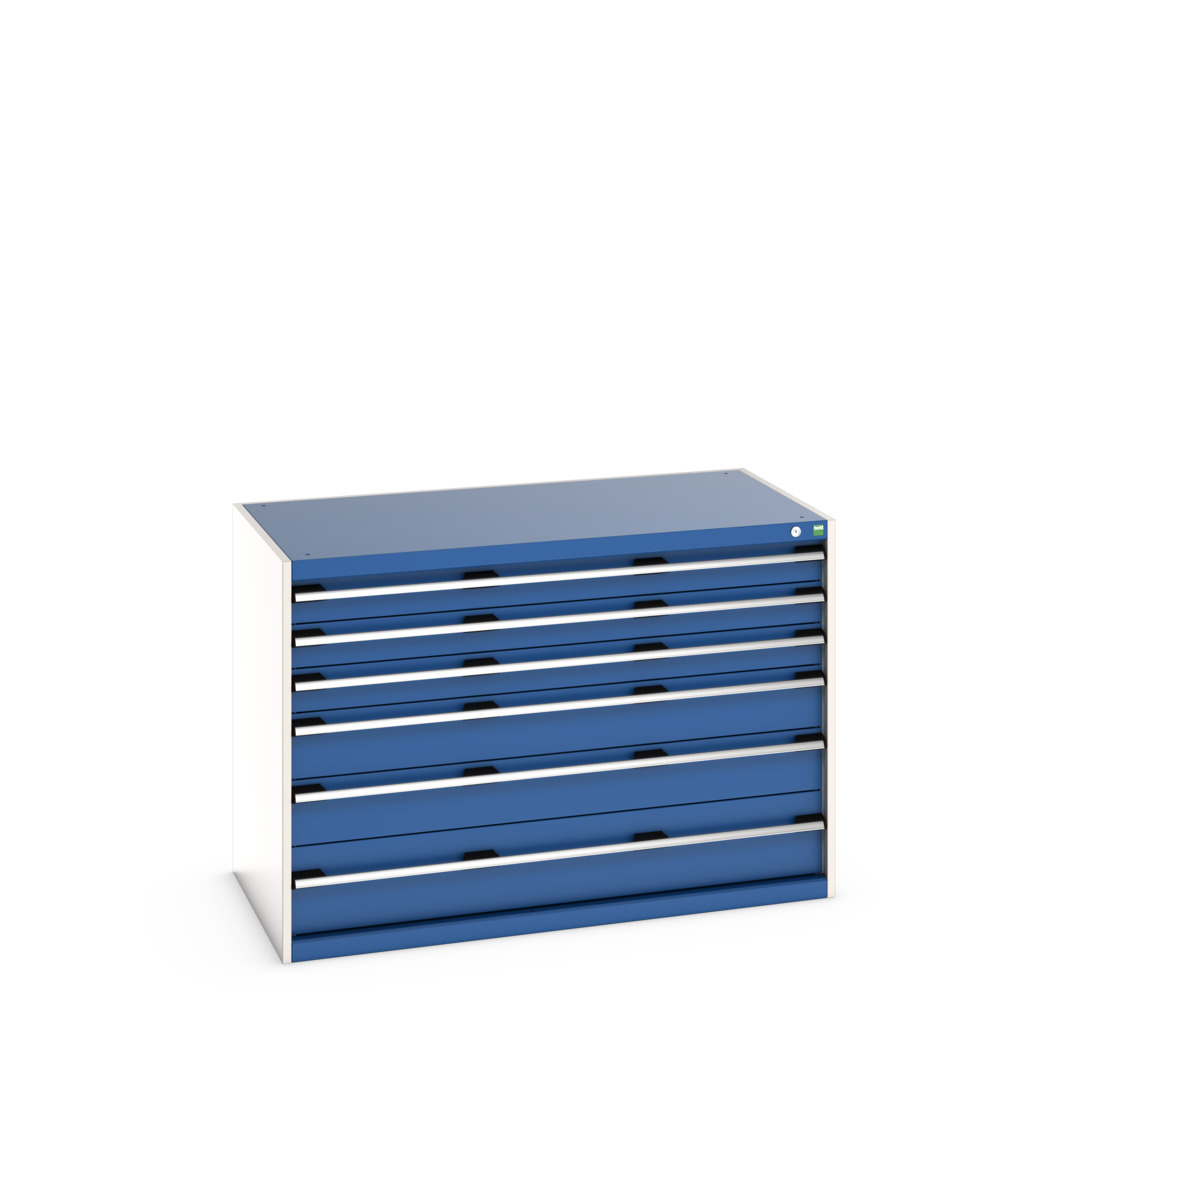 40030086.11V - cubio drawer cabinet